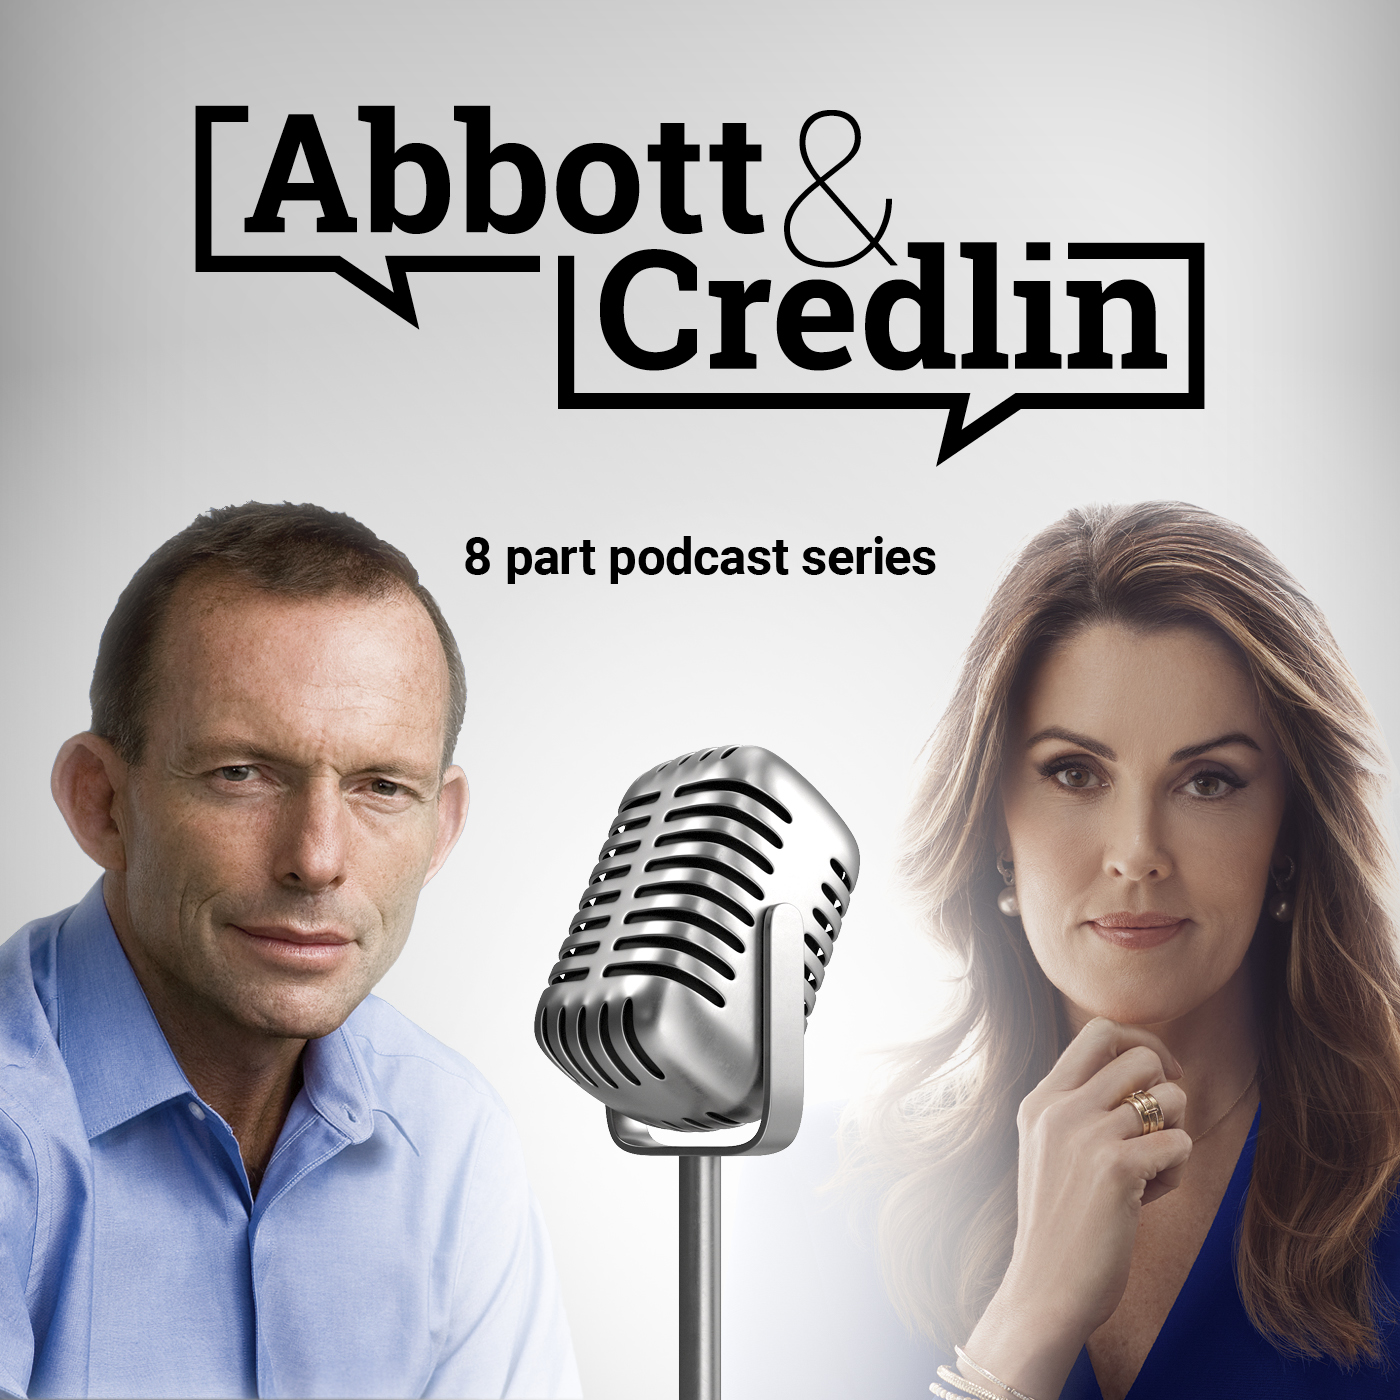 Abbott & Credlin | Episode 4